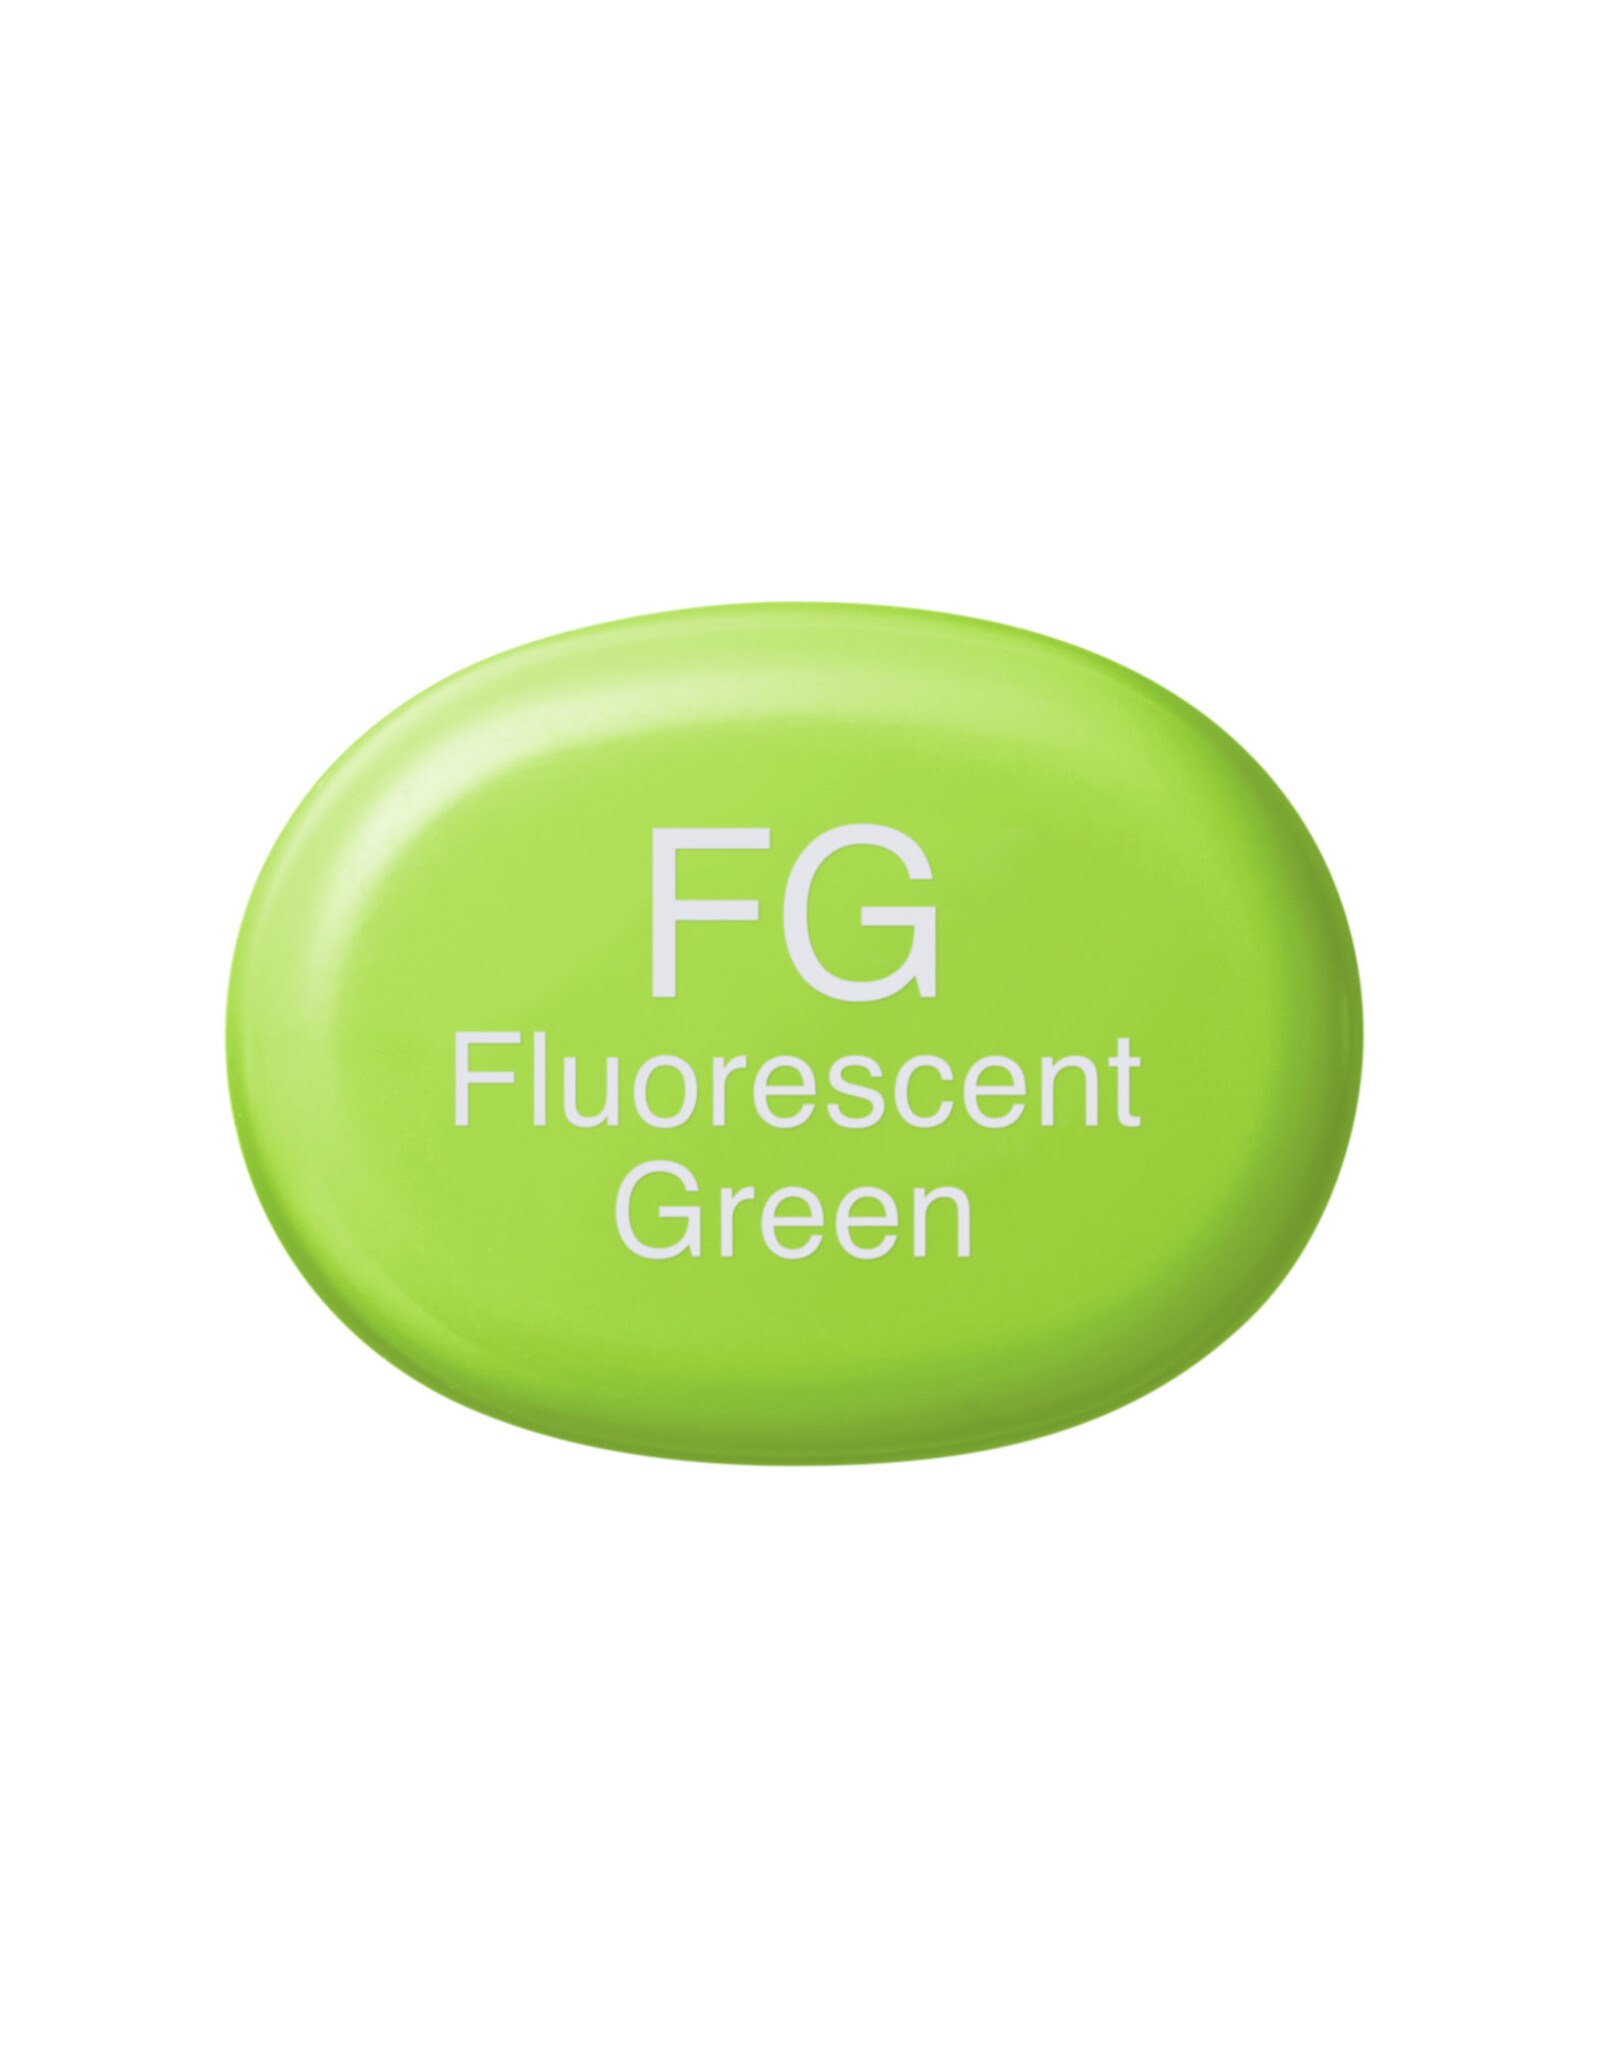 COPIC COPIC Sketch Marker FG Fluorescent Green